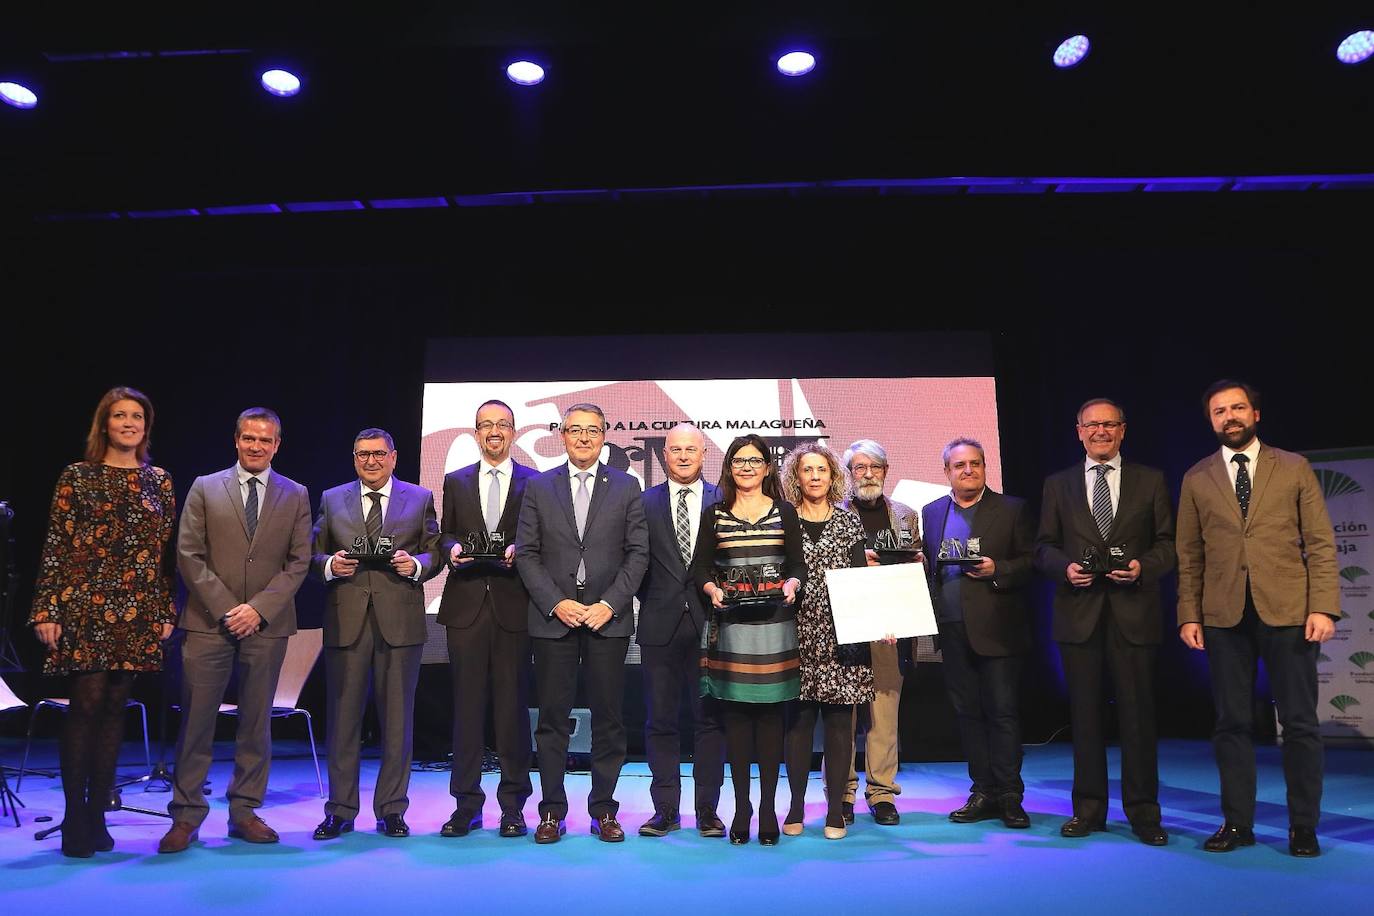 Todos los premiados en la gala del II Premio a la Cultura Malagueña Antonio Garrido Moraga posan en una foto de familia.